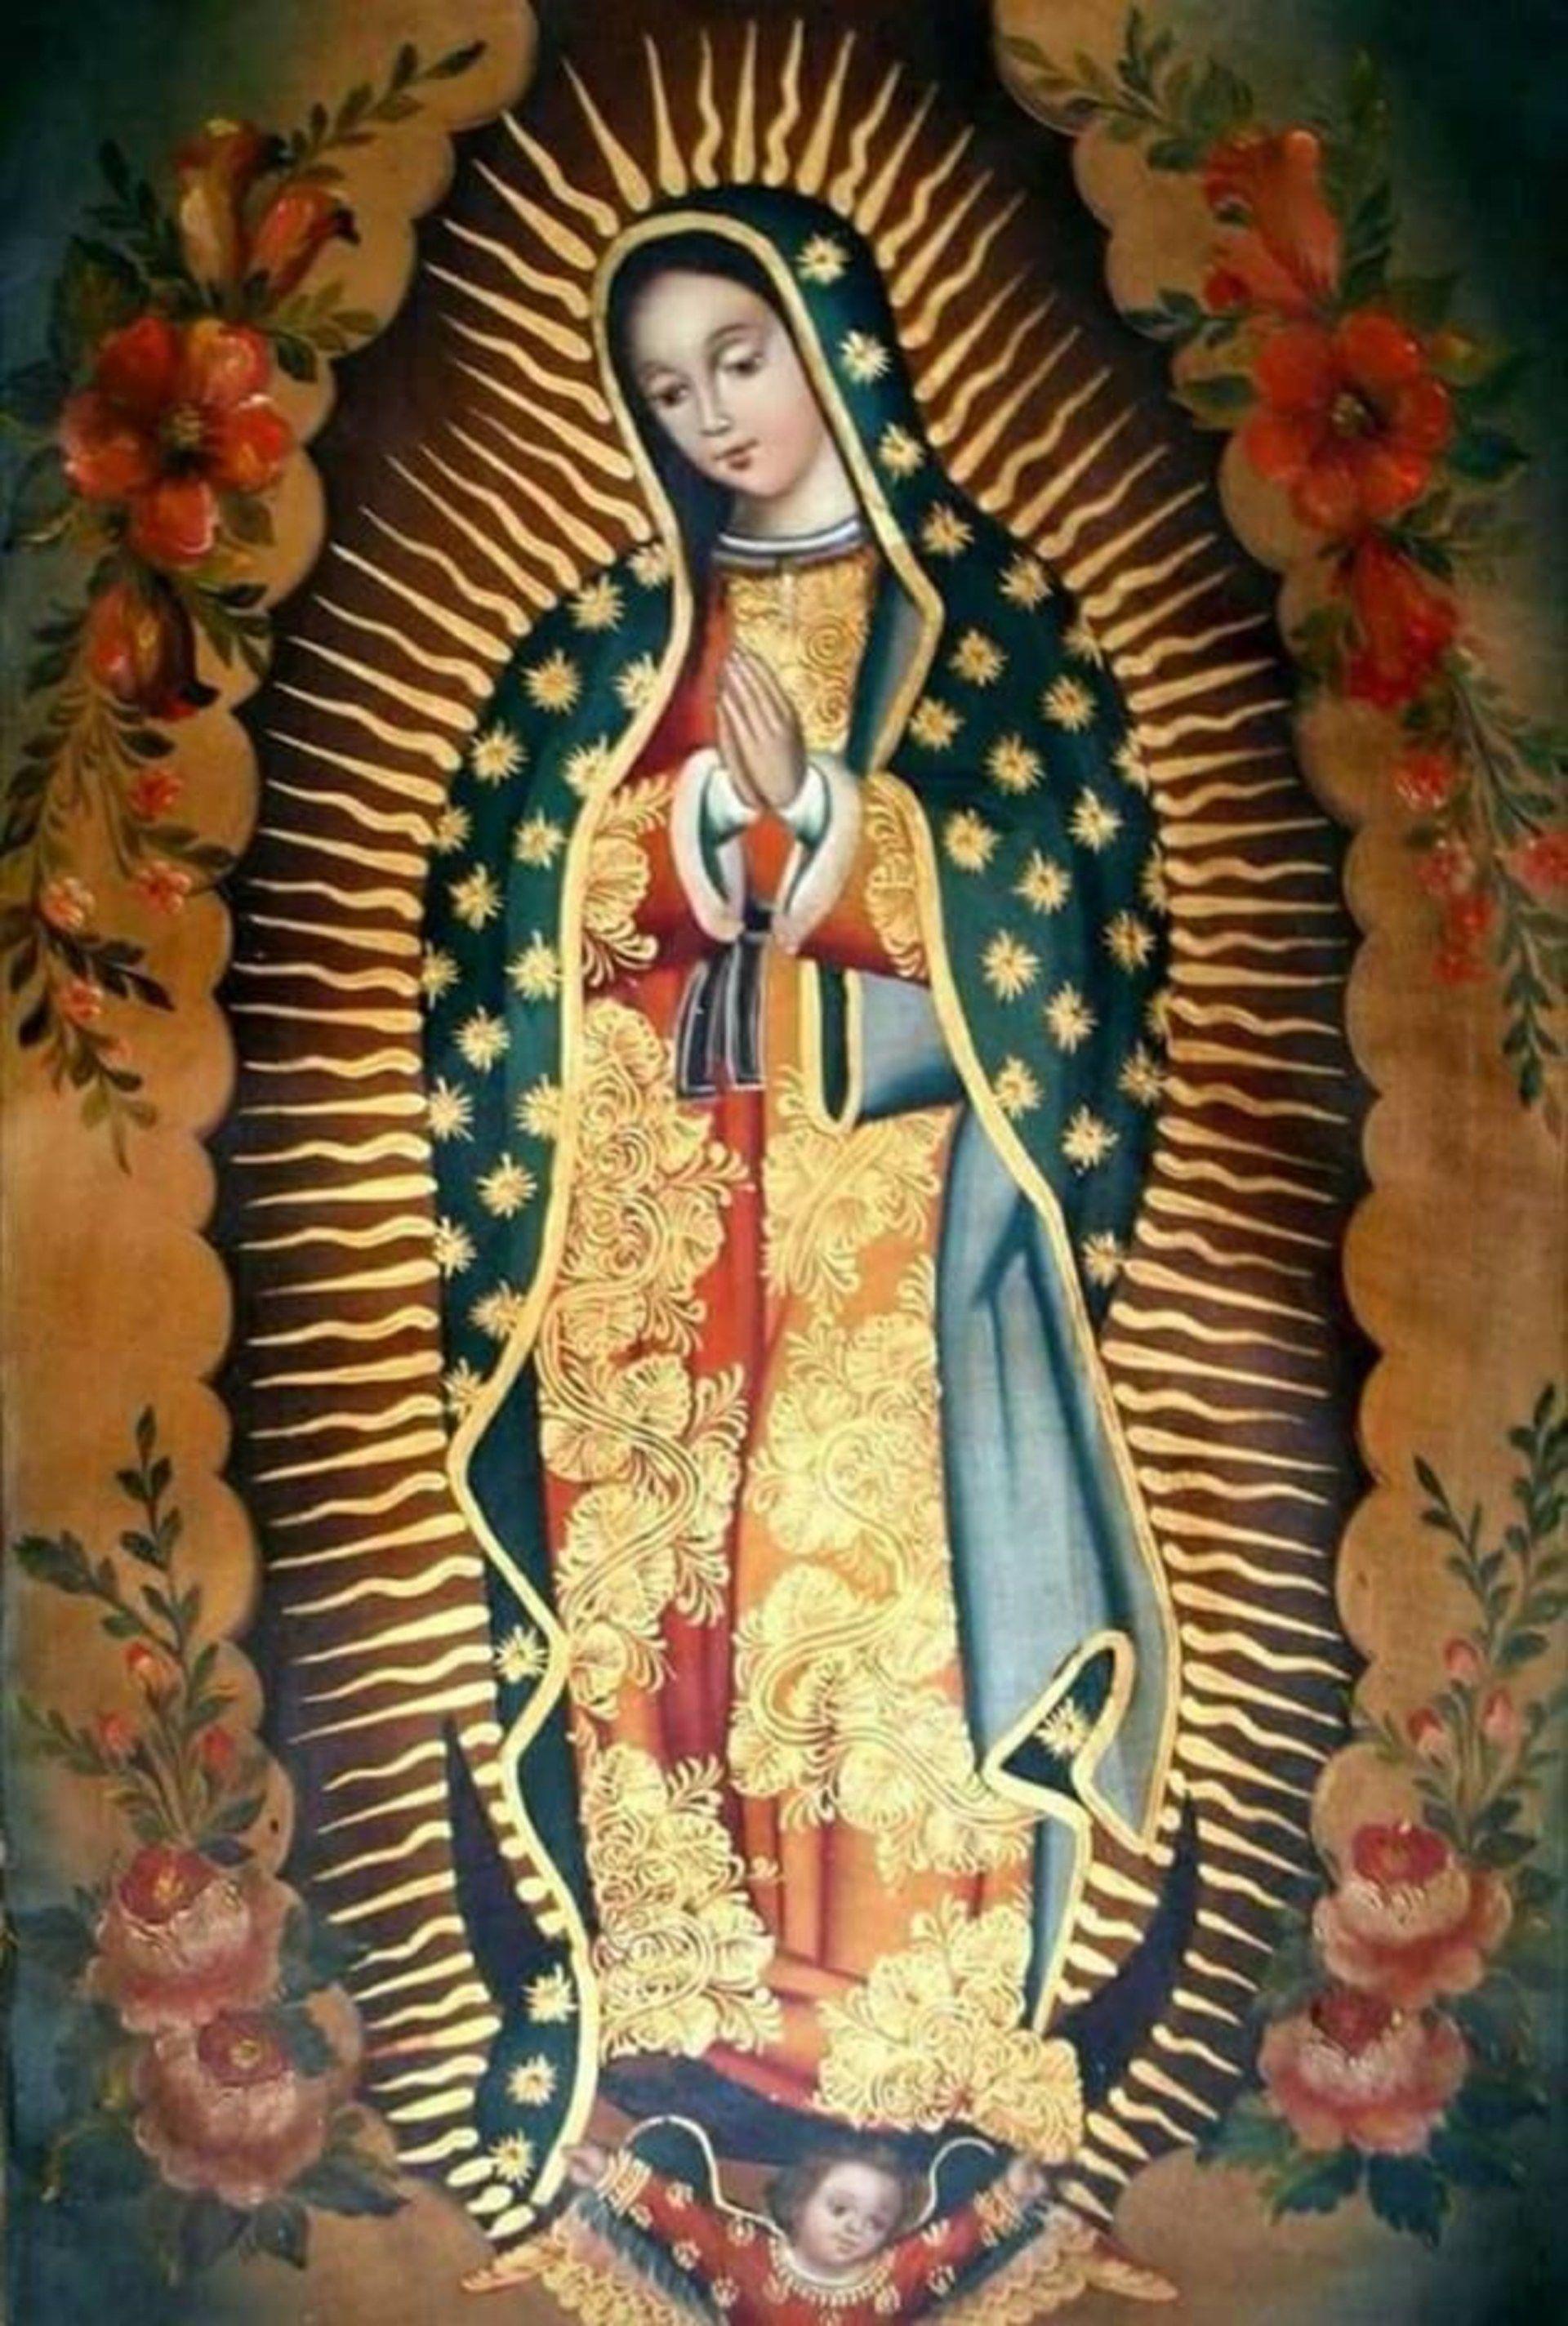 La Virgen De Guadalupe | Images and Photos finder